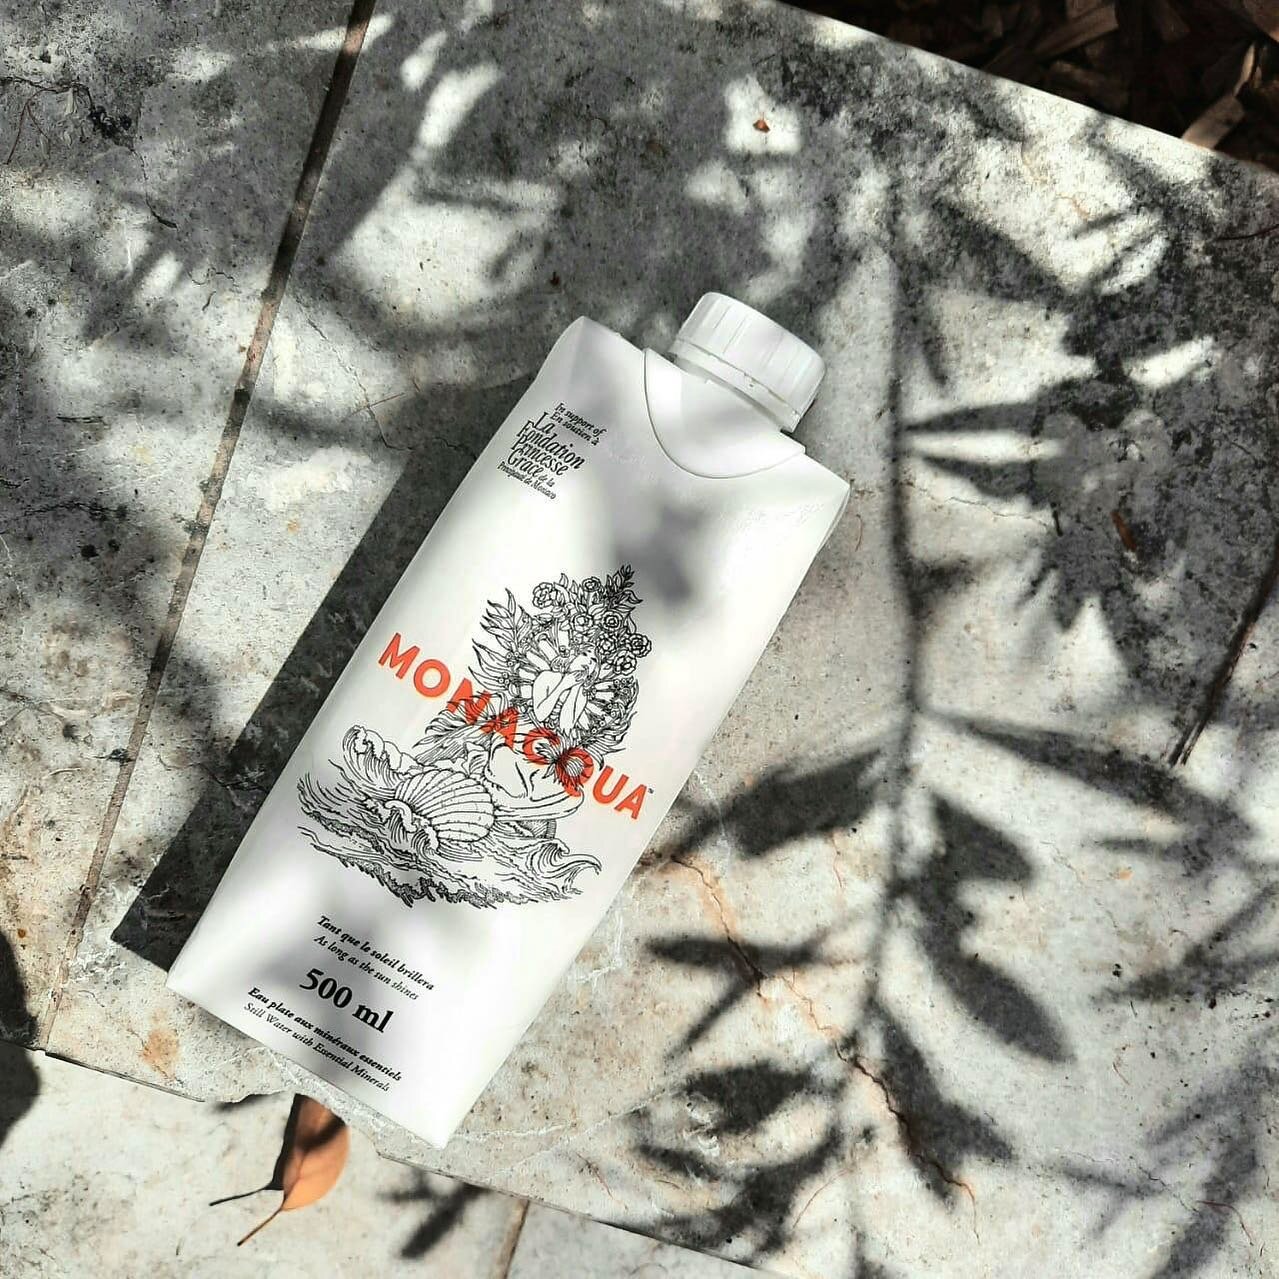 Monacqua 🇲🇨 💦 

Nous sommes fiers de vous pr&eacute;senter notre nouvelle marque d'eau 100% recyclable, disponible exclusivement en Principaut&eacute; de Monaco. 

~

We are delighted to introduce our unique 100% recyclable water brand exclusively